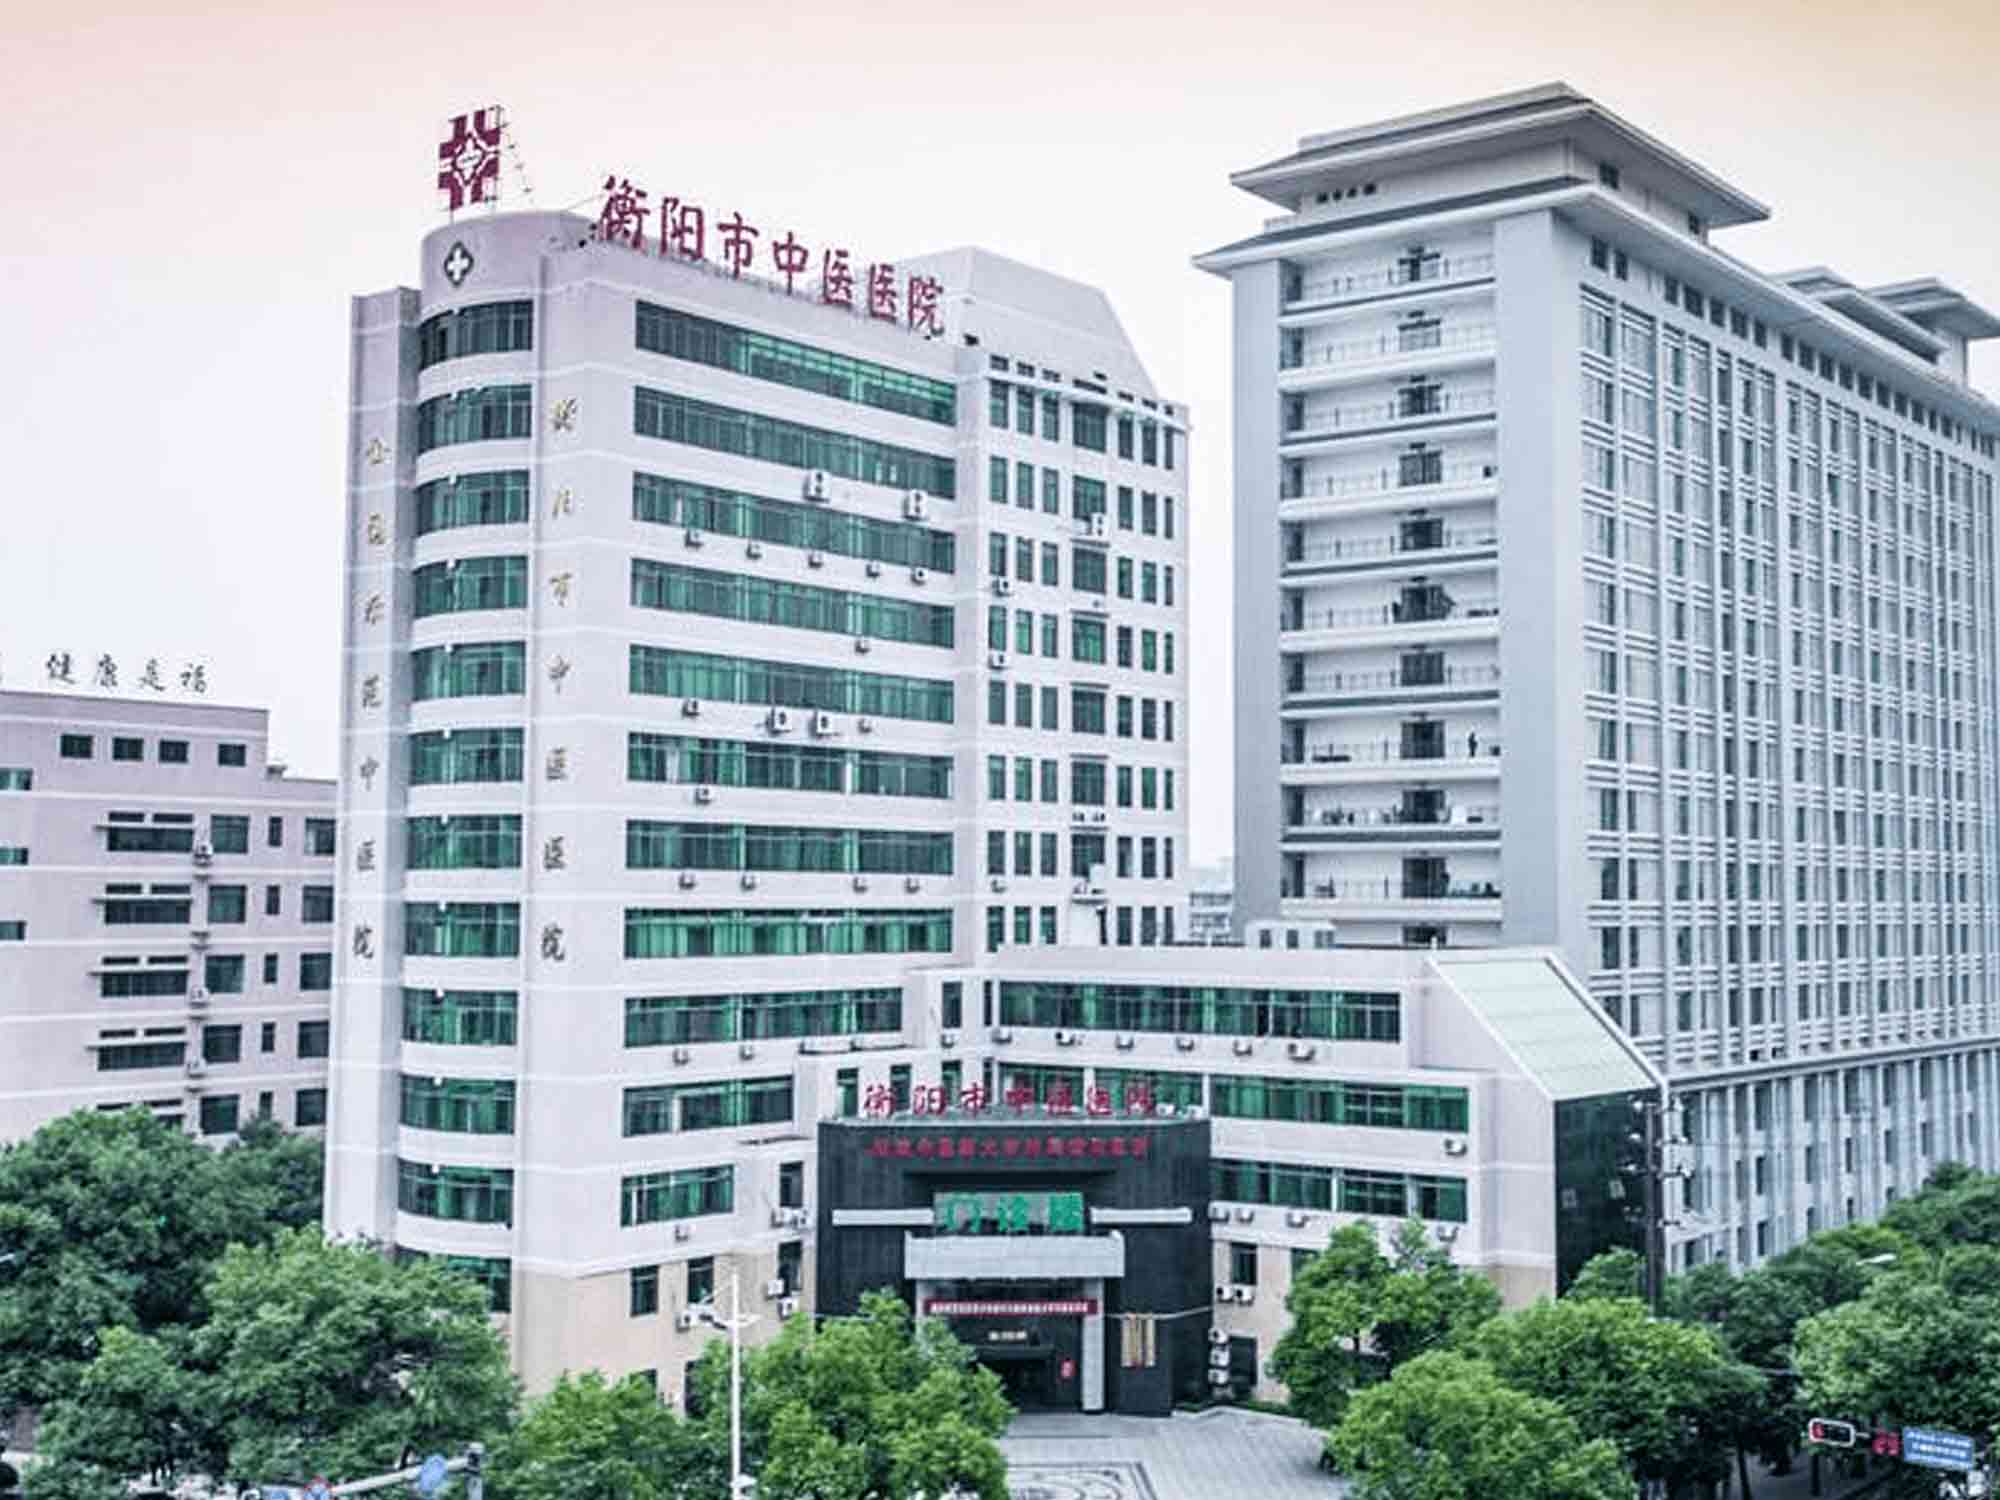 衡阳市中医医院体检中心